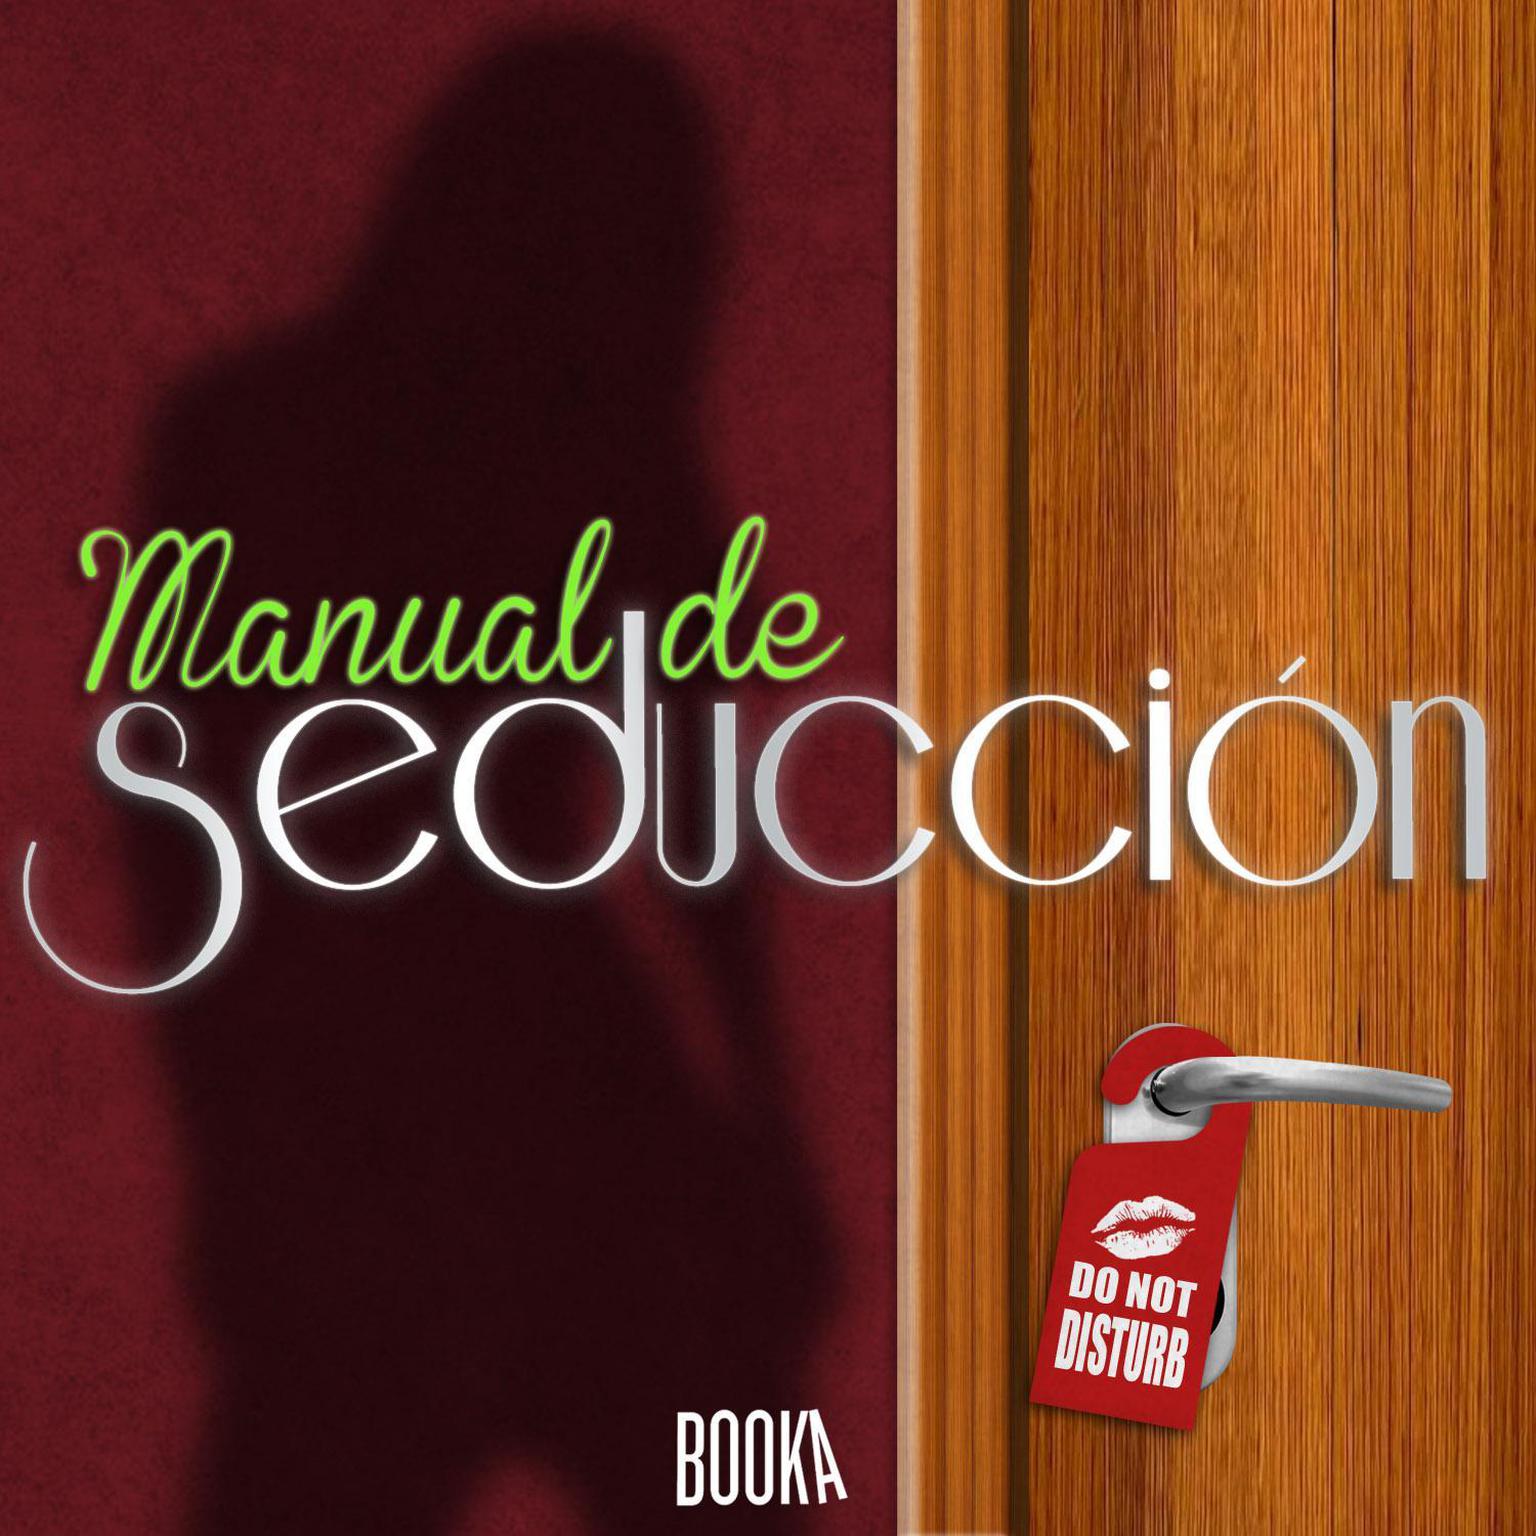 Manual de seducción (Seduction Manual) Audiobook, by Anonymous